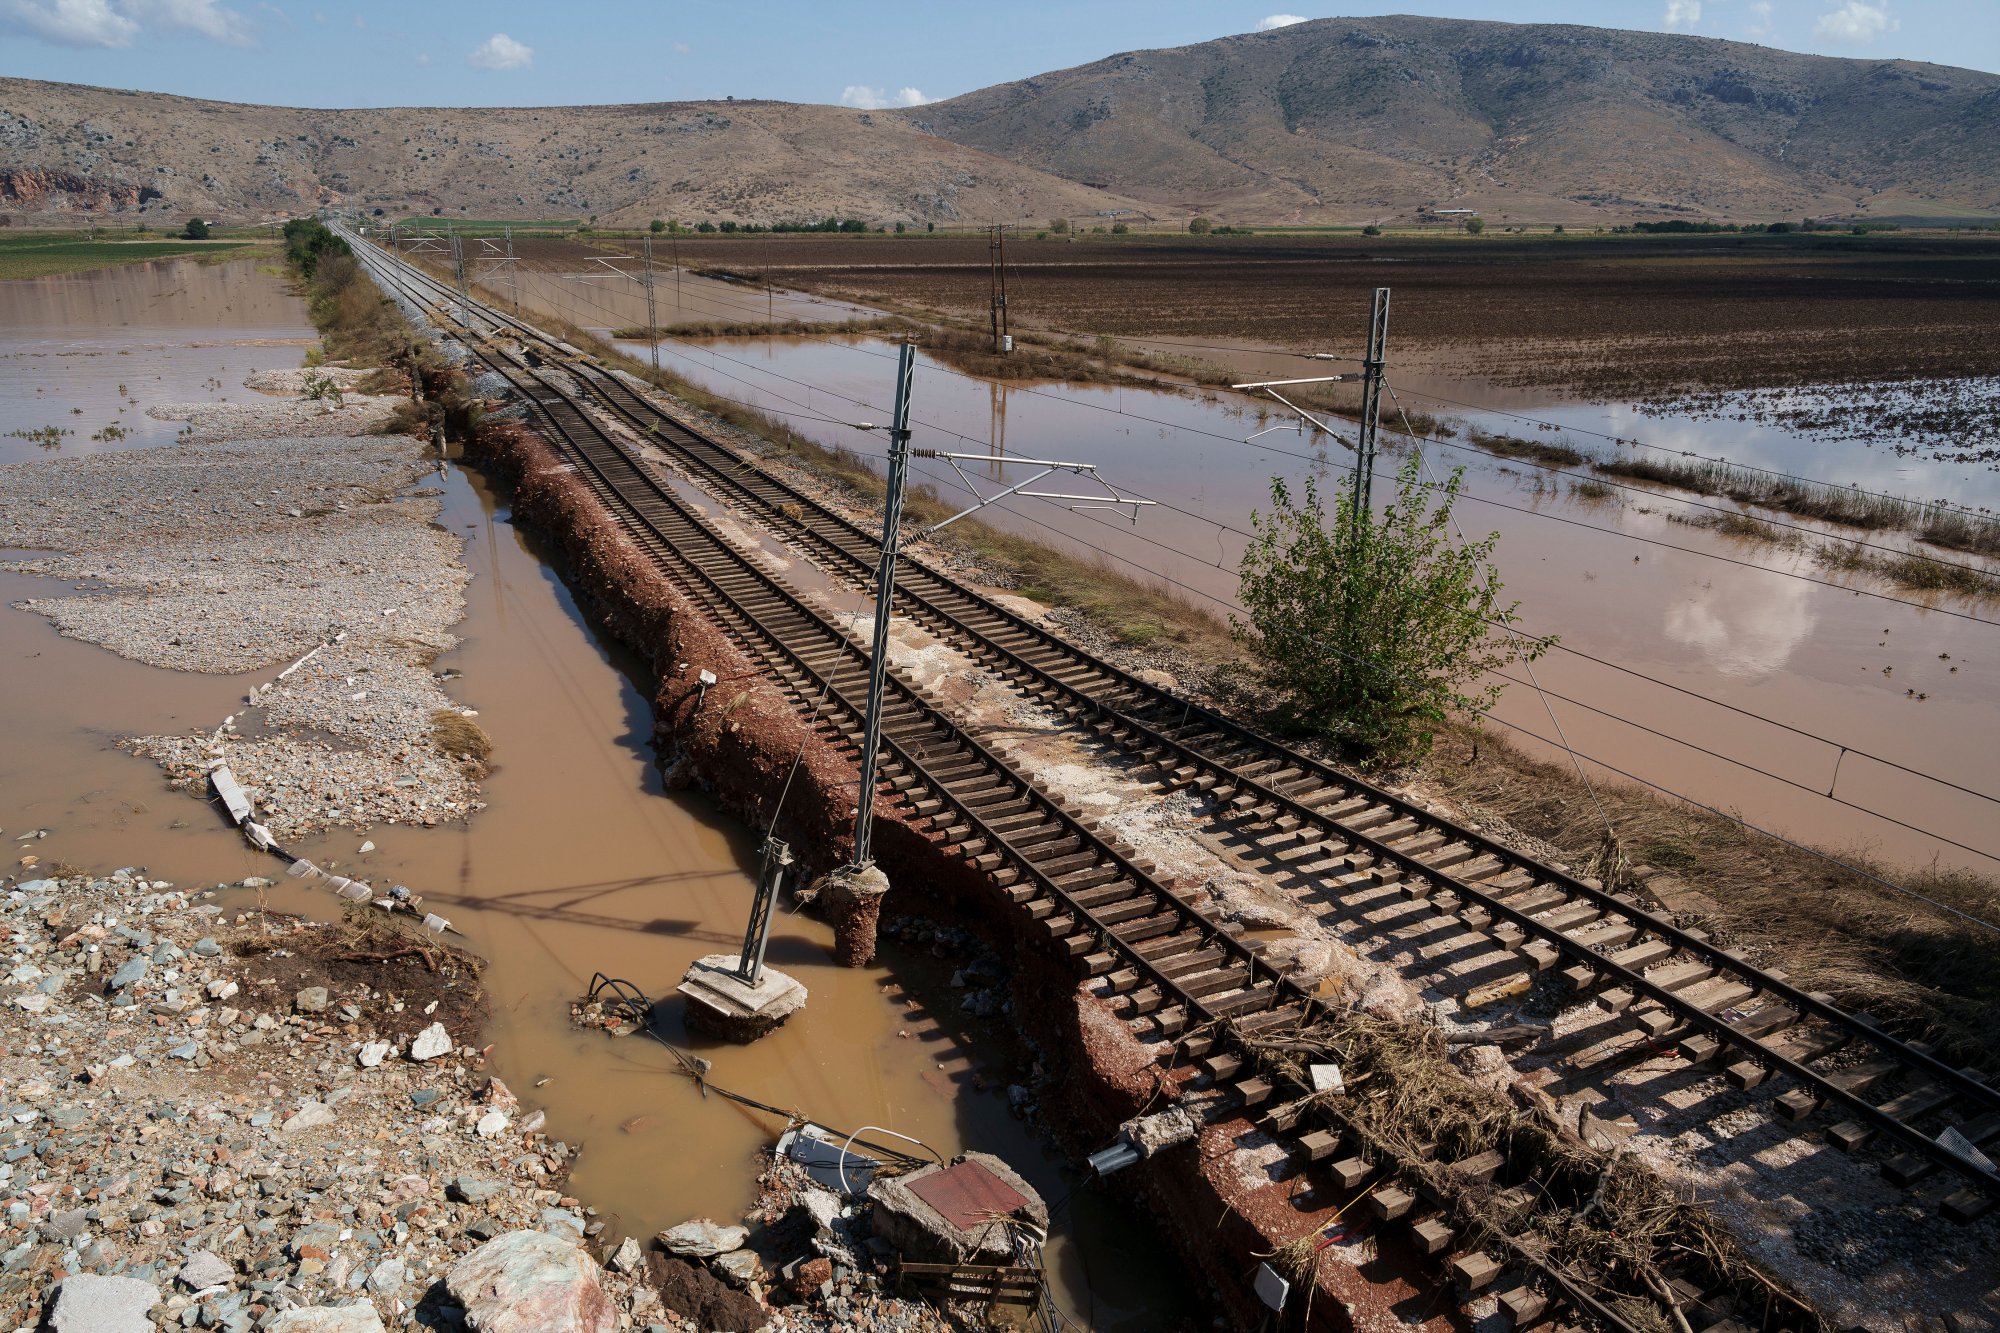 Σιδηροδρομικό δίκτυο: Σε δύο χρόνια η πλήρης αποκατάσταση – Έχουν καταστραφεί ολικά 180 χλμ δικτύου